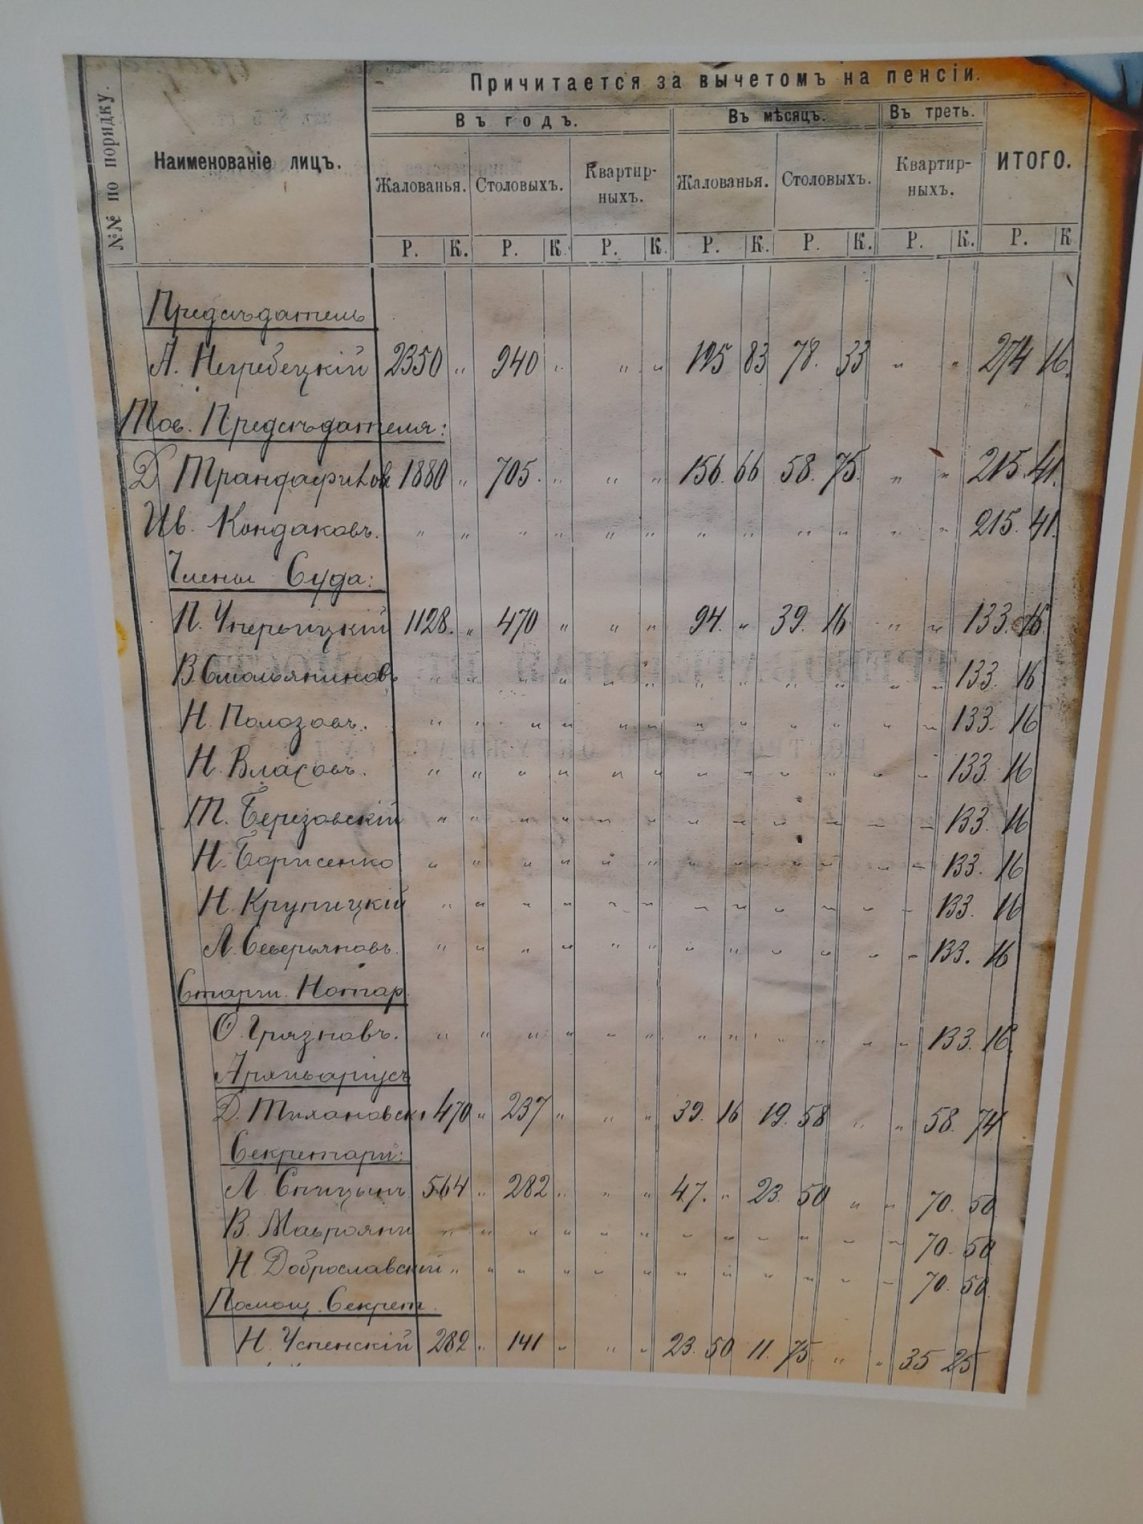 В Костромском областном суде открылась уникальная выставка архивных документов